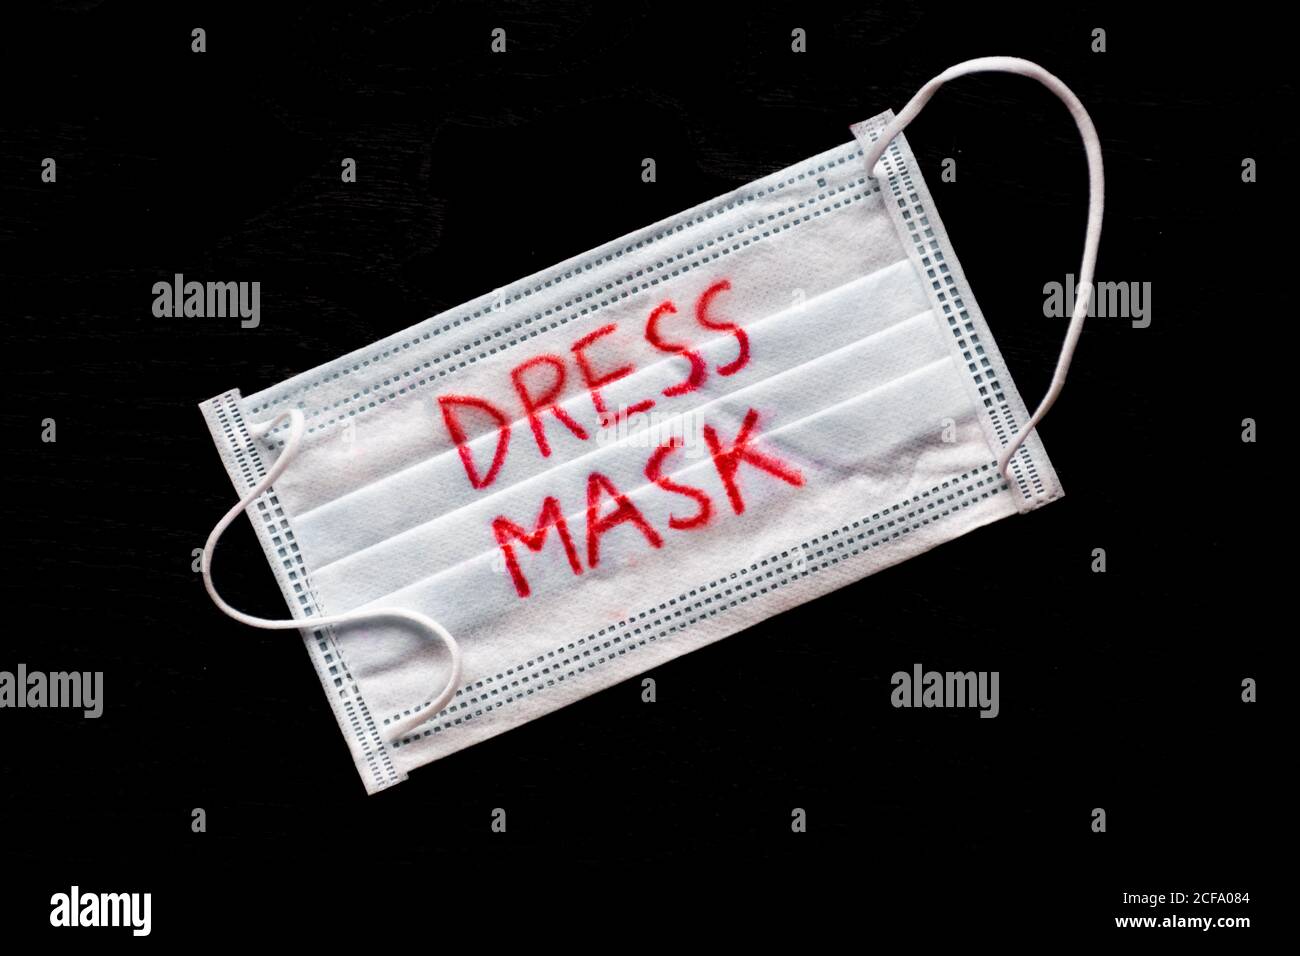 Masque vestimentaire, masque de protection du visage contre la propagation du coronavirus ou COVID-19 Banque D'Images